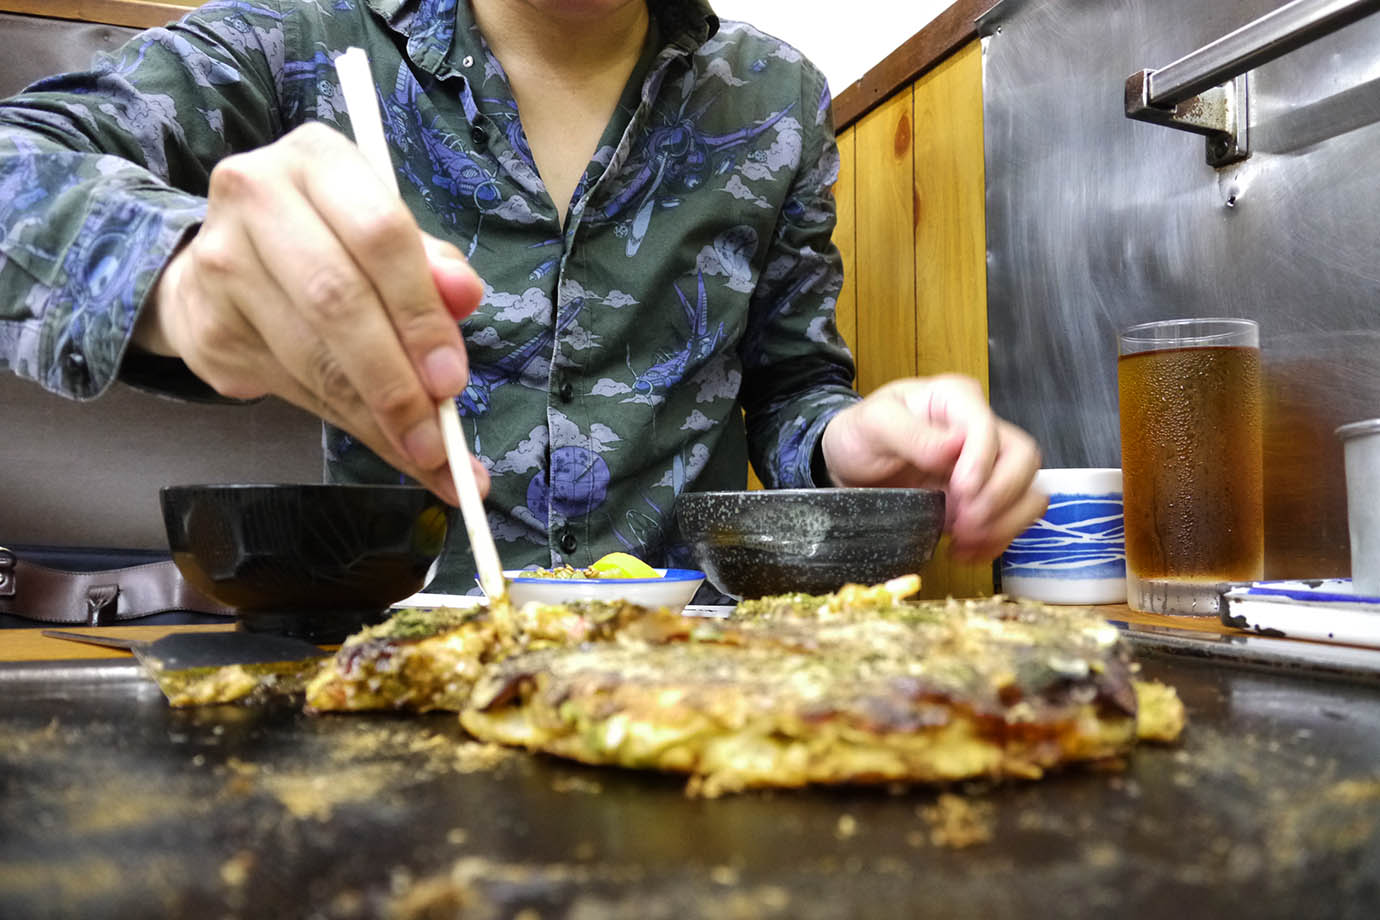 okonomiyaki4